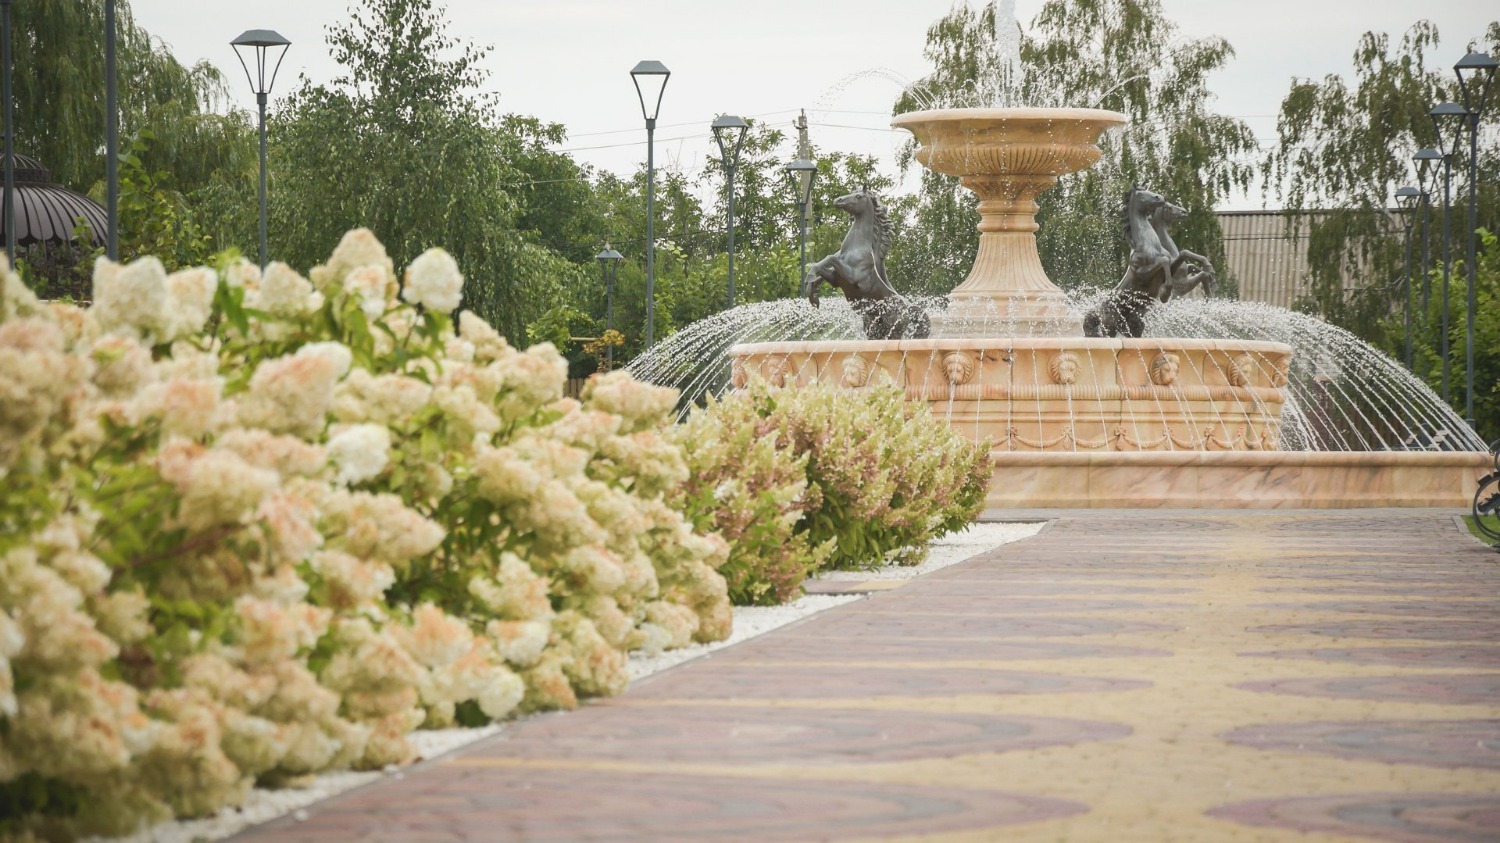 Местный парк с фонтаном и беседками — ещё одна точка притяжения 